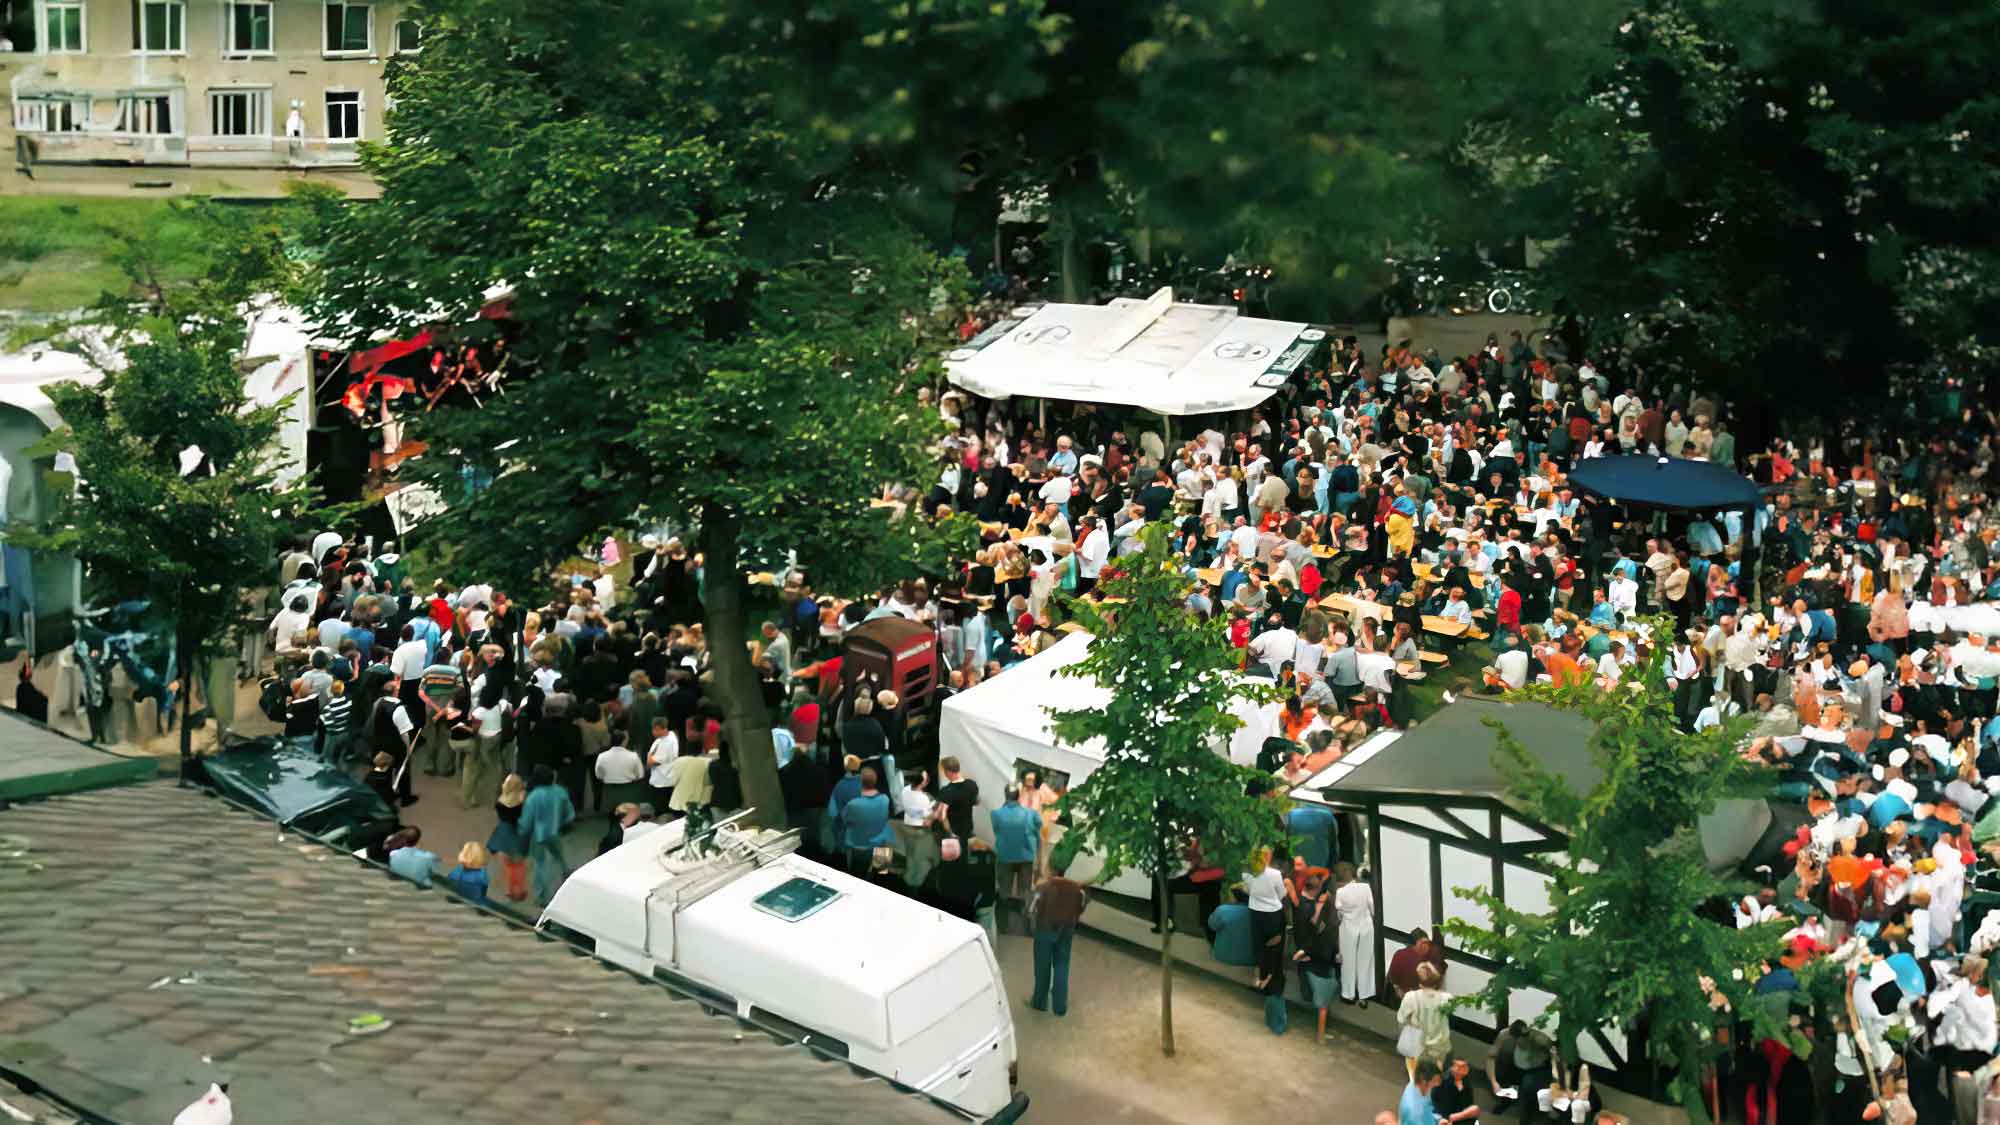 Woche der Kleinen Künste 2005, Dreiecksplatz Gütersloh, 27. Juni bis 1. Juli 2005